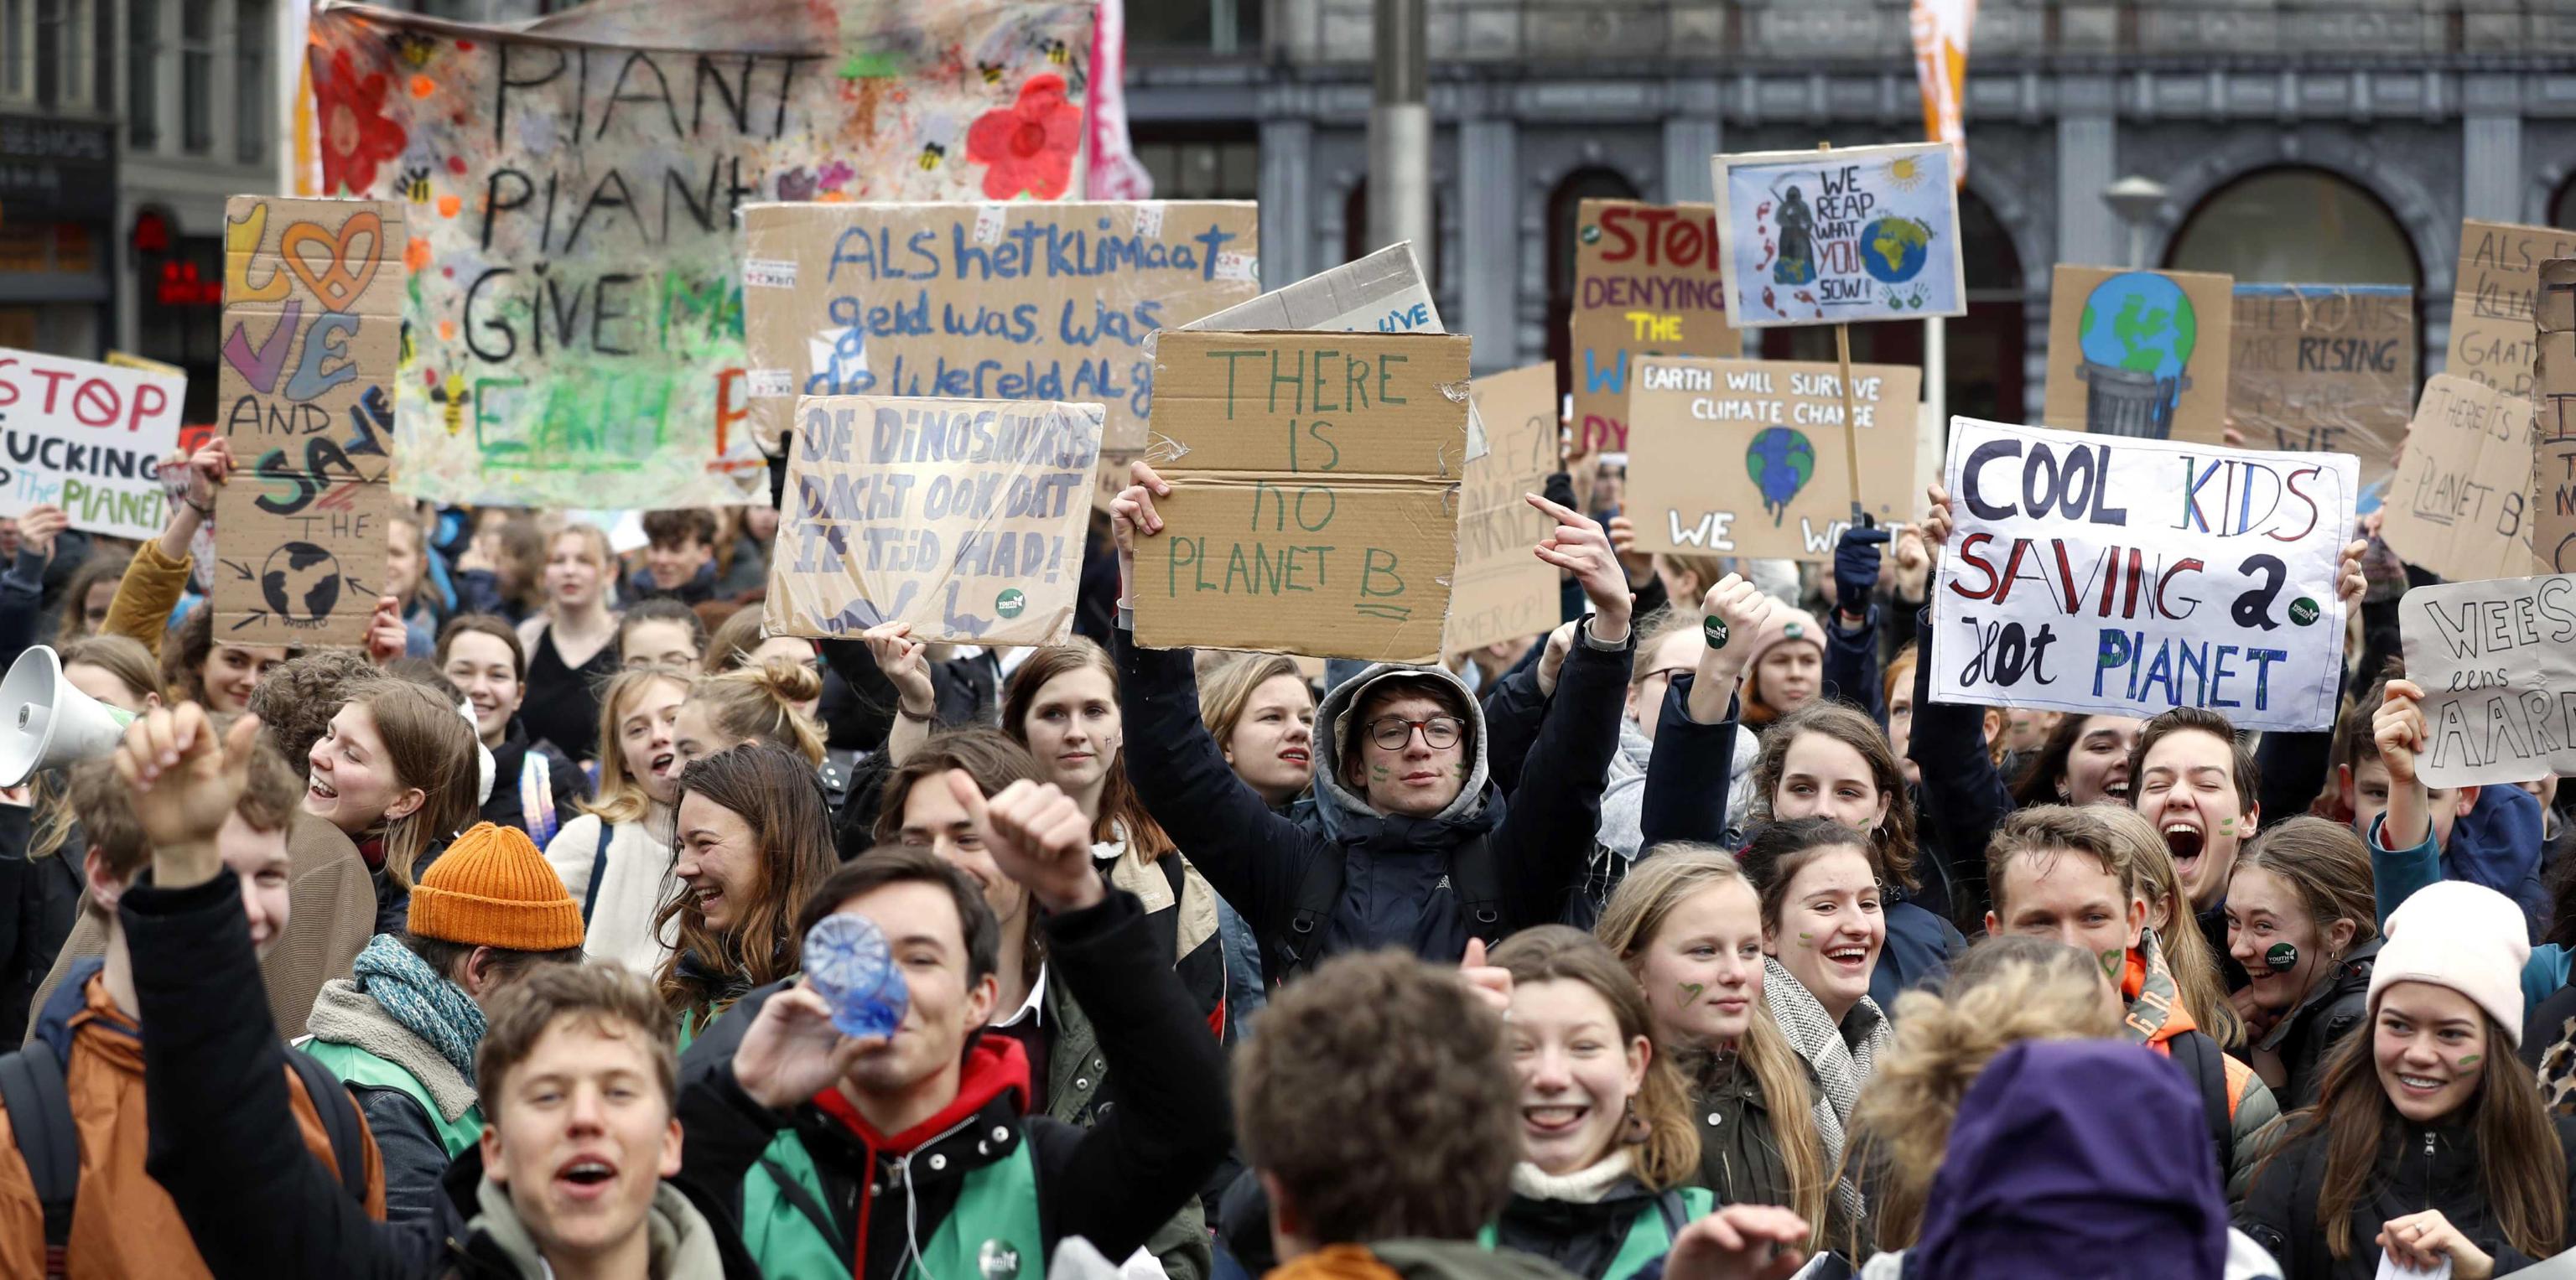 La protesta coinvolge tutto il mondo e arriva in Olanda, ad Amsterdam, dove molti studenti sono scesi in piazza per mostrare il proprio dissenso